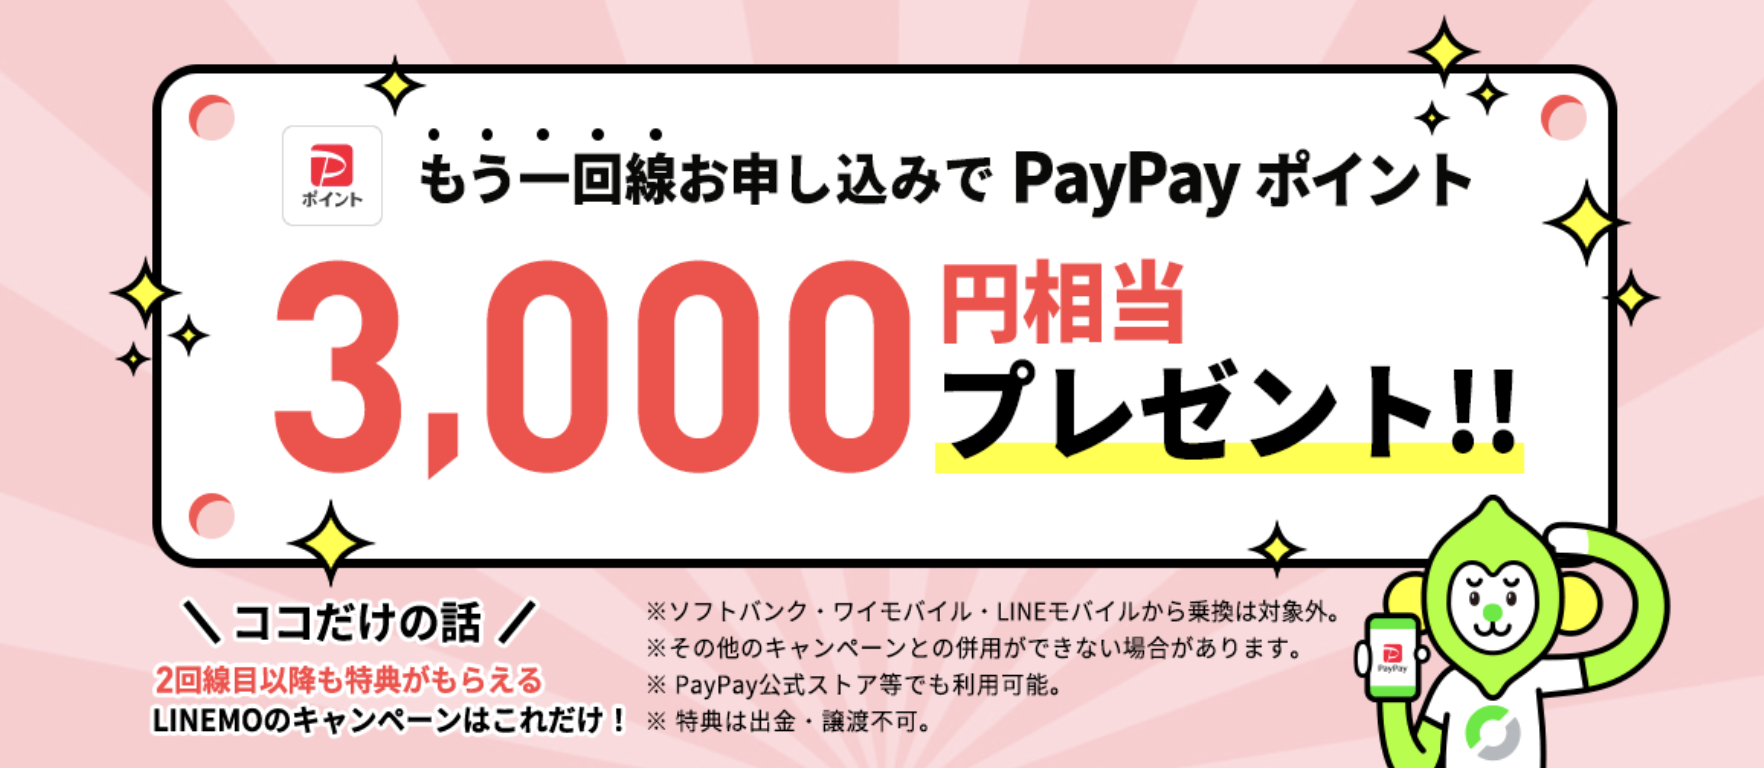 追加申込でPayPayポイント3,000円相当プレゼントキャンペーン